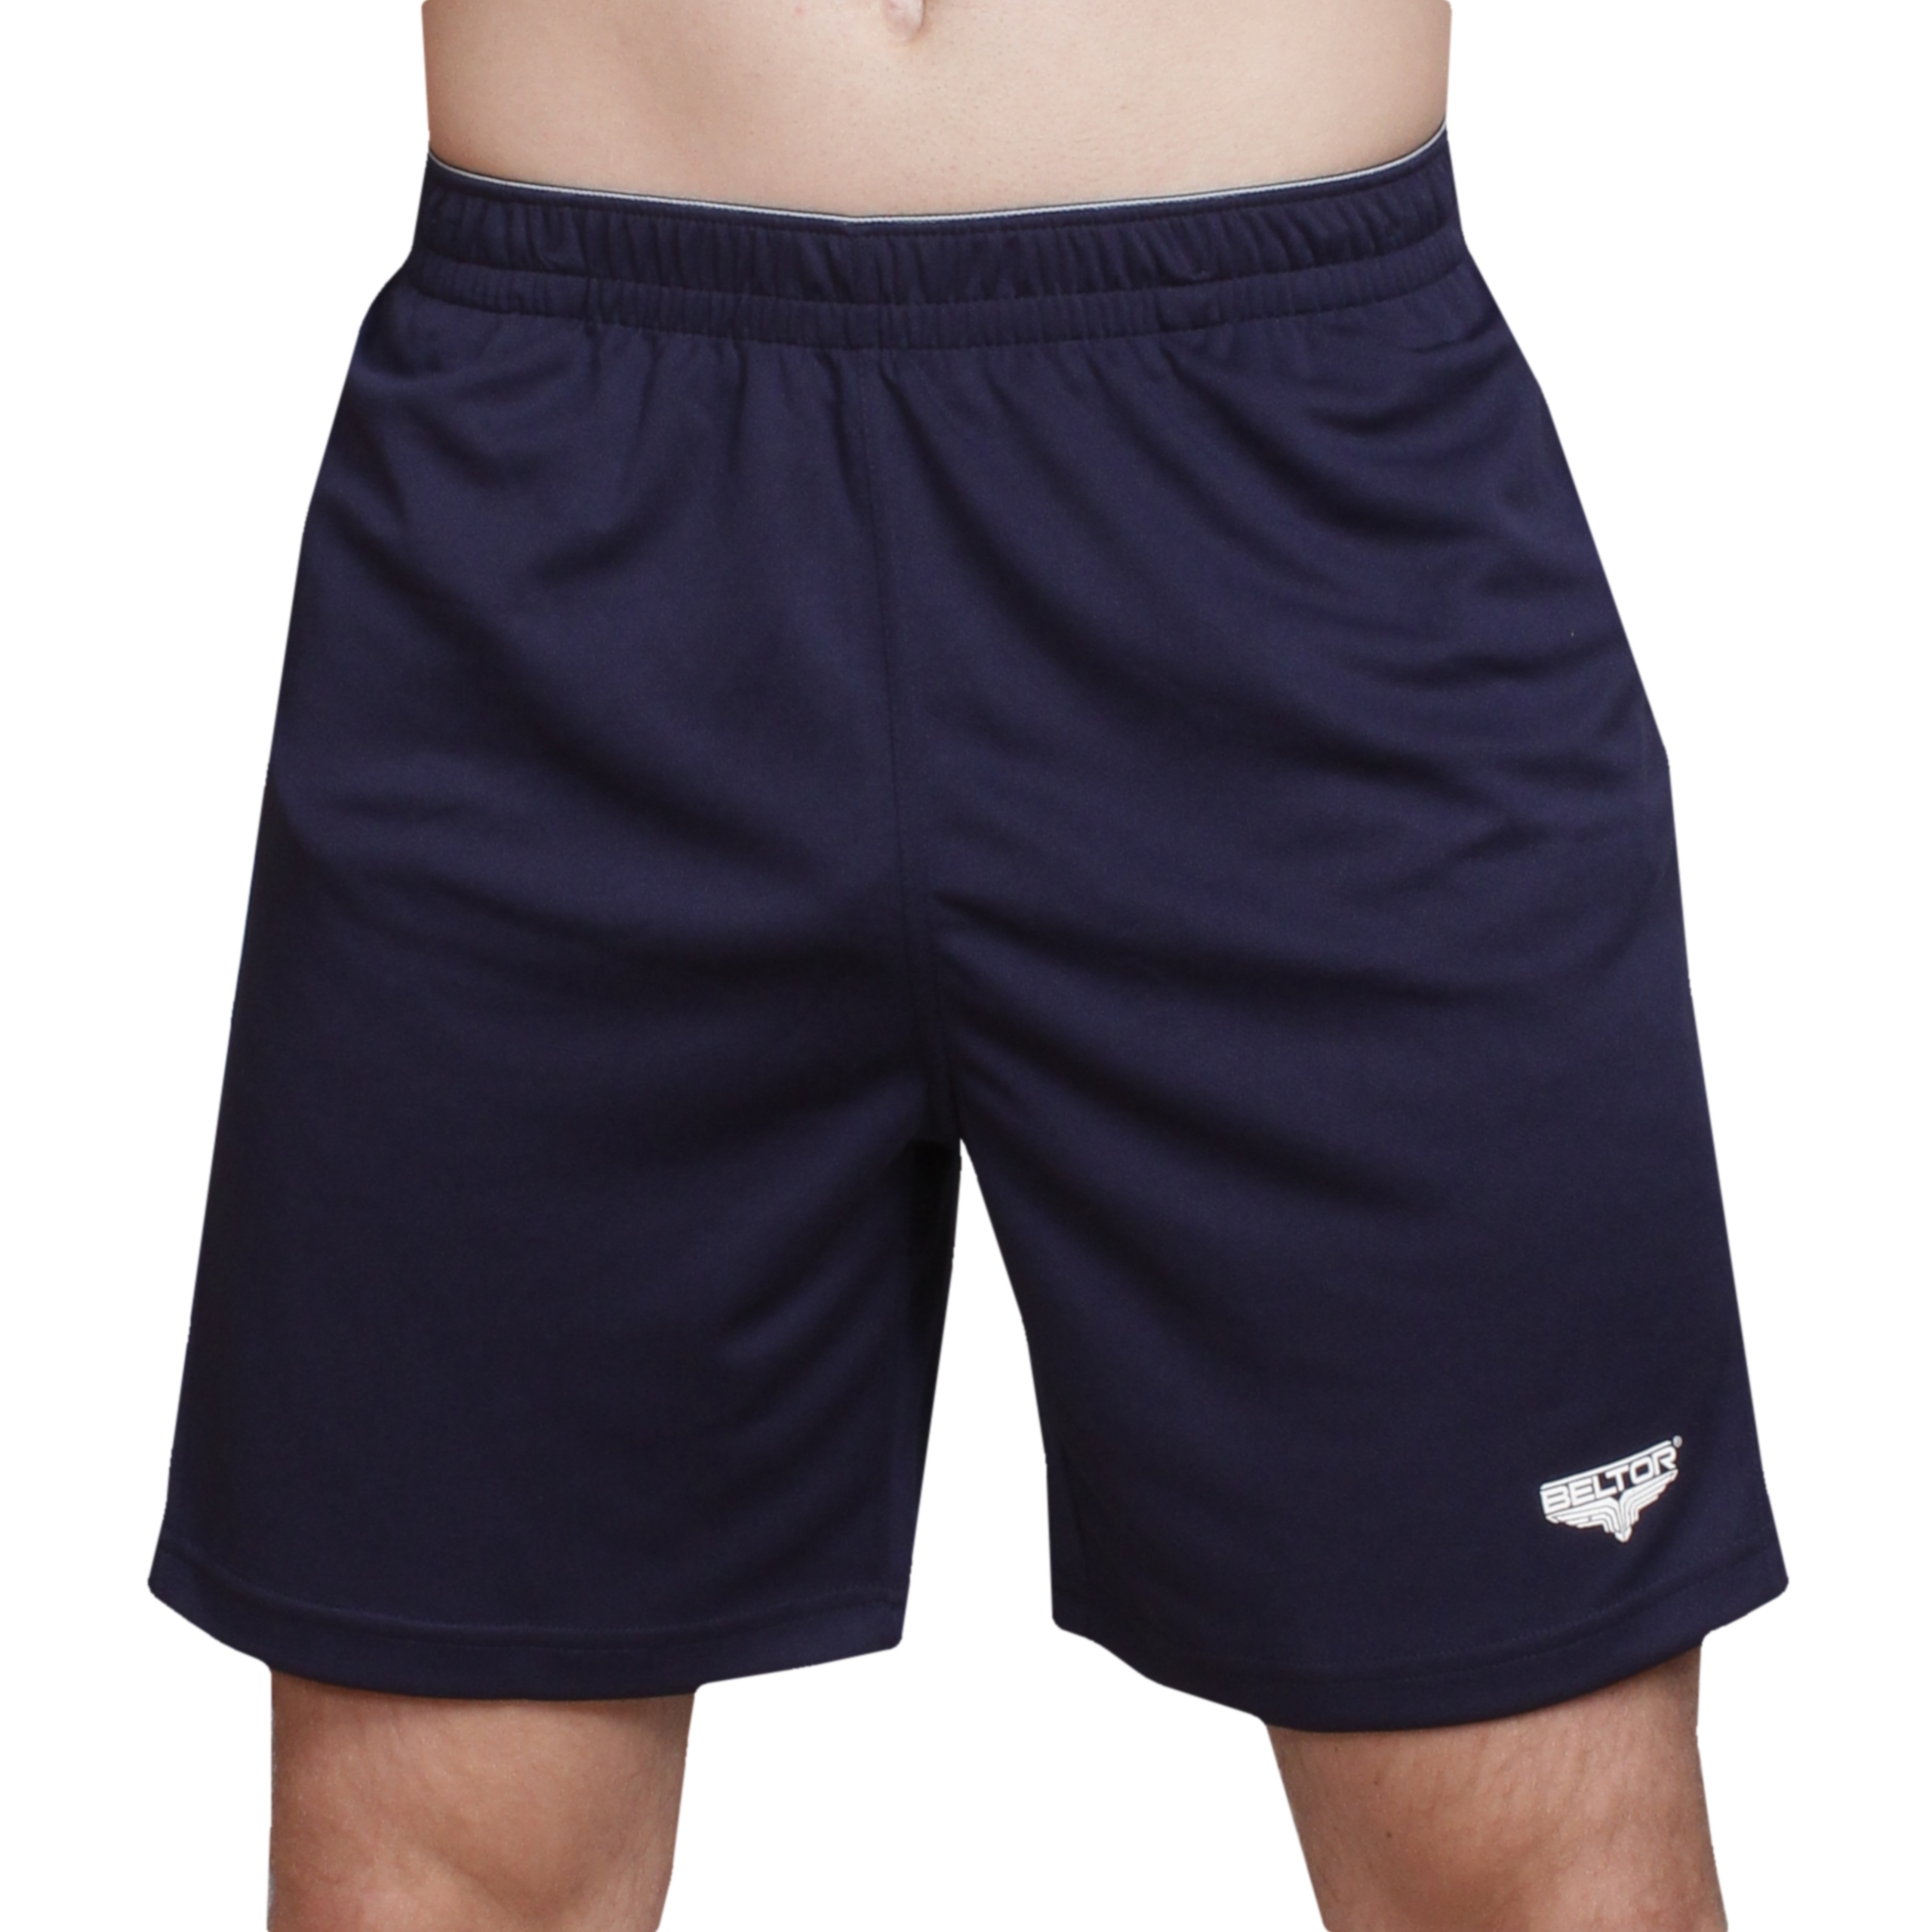 Phantom Athletics шорты. Adidas designed 4 Running shorts. Шорти из волоранта купить. Чем отличаются шорты от шортов